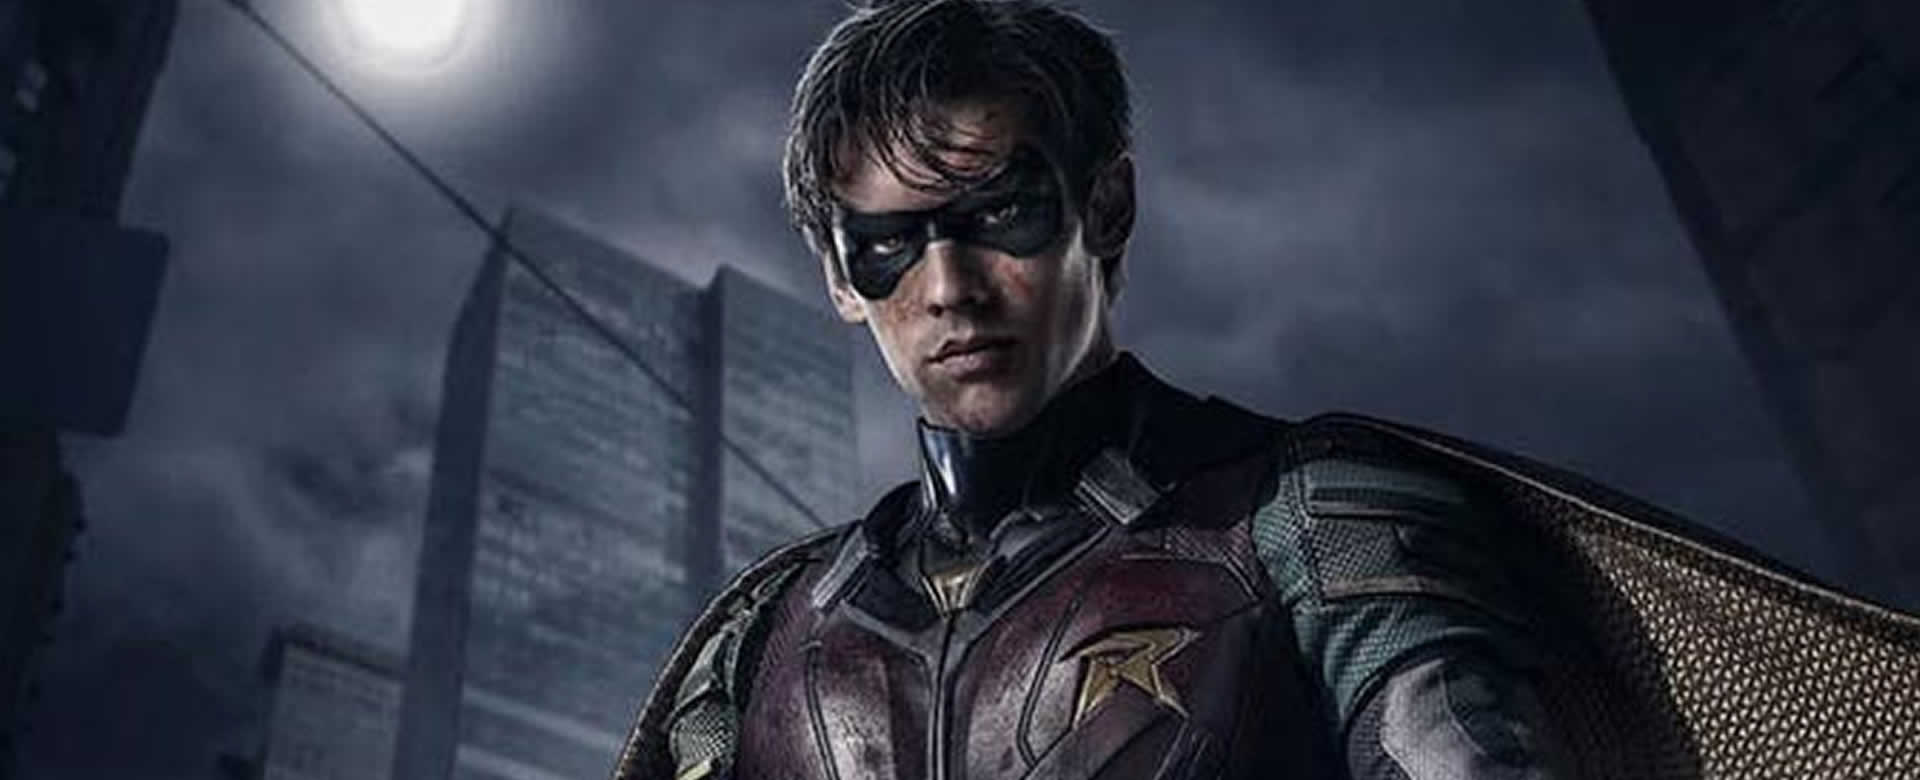 DC Cómics sorprende con teaser de Robin en Titans